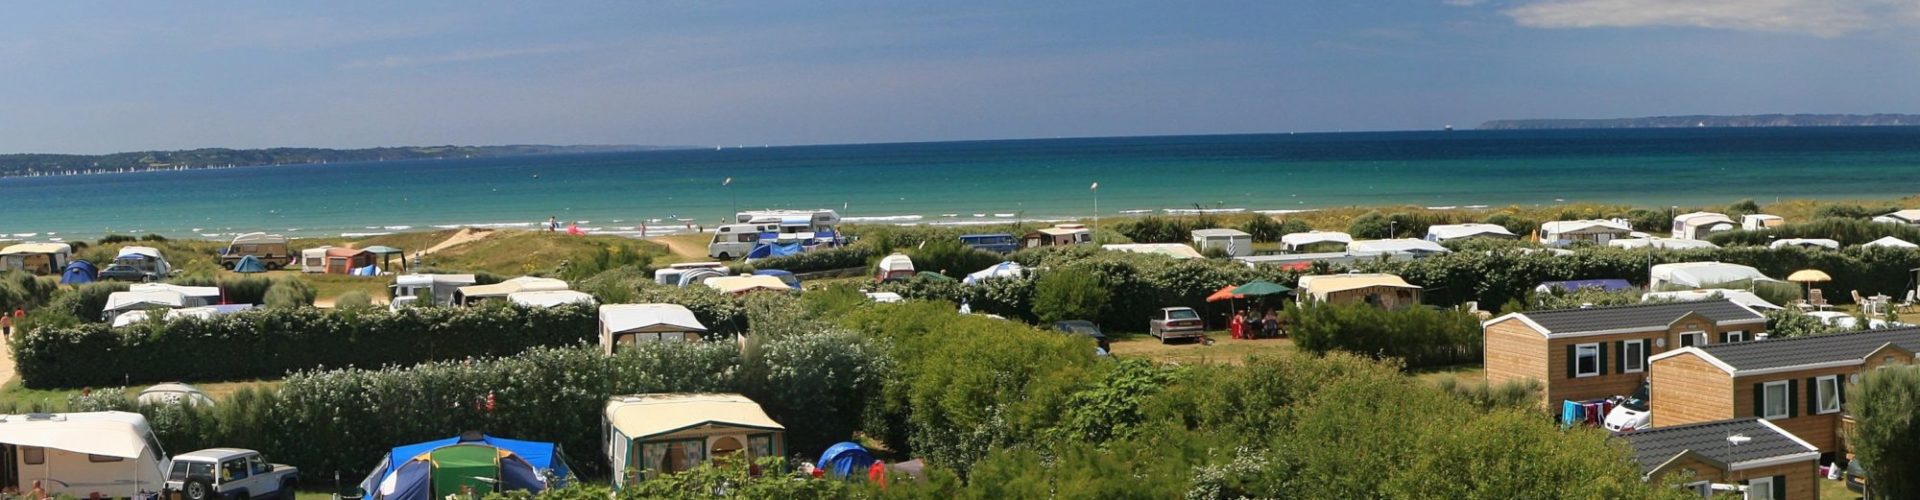 Camping la plage de Treguer en Bretagne